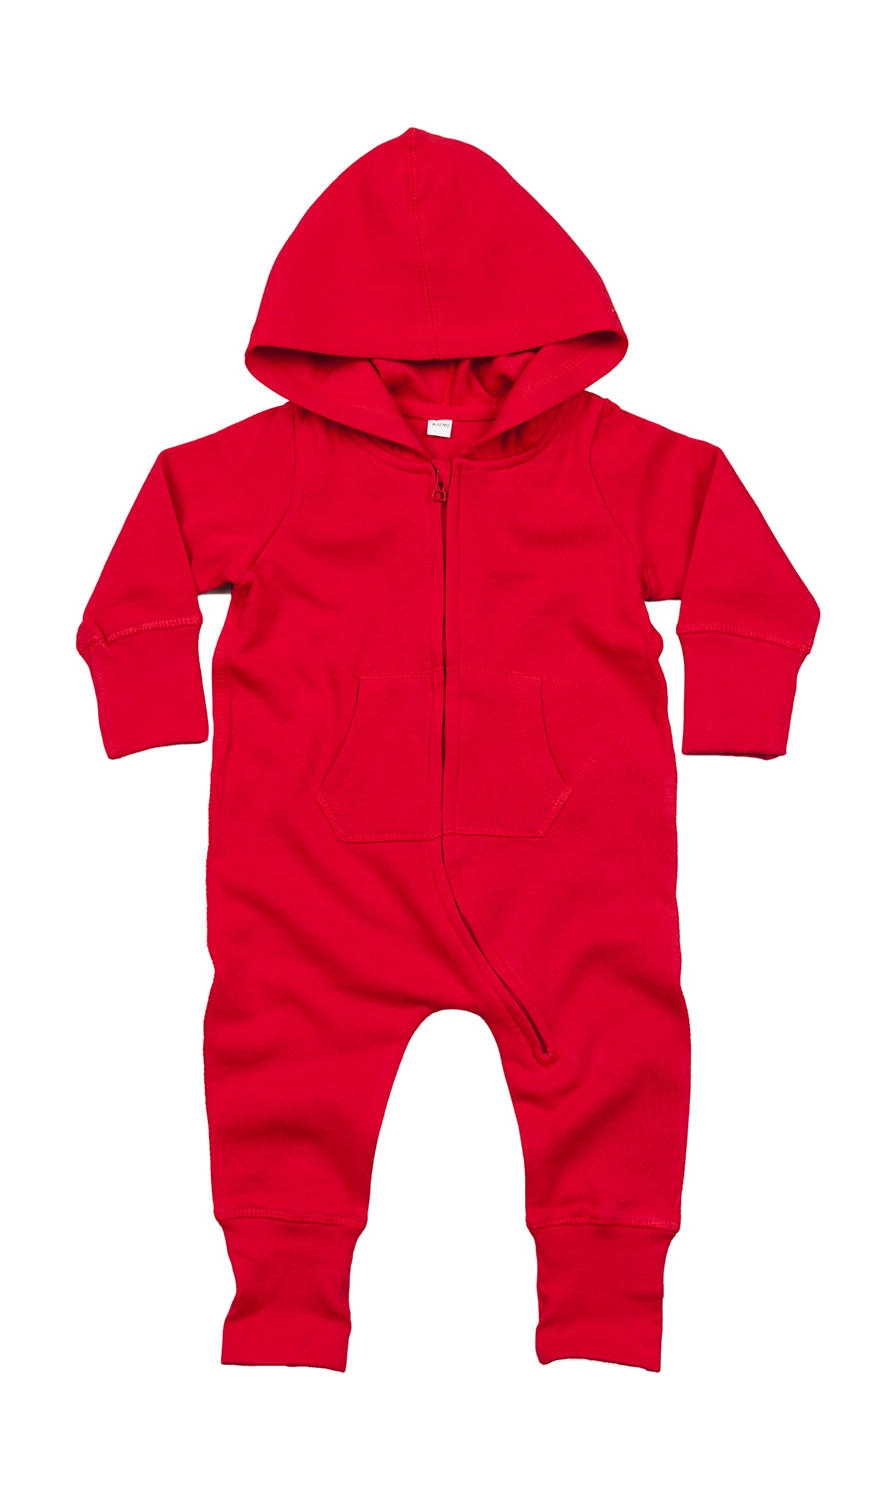 Baby All-in-One zum Besticken und Bedrucken in der Farbe Red mit Ihren Logo, Schriftzug oder Motiv.